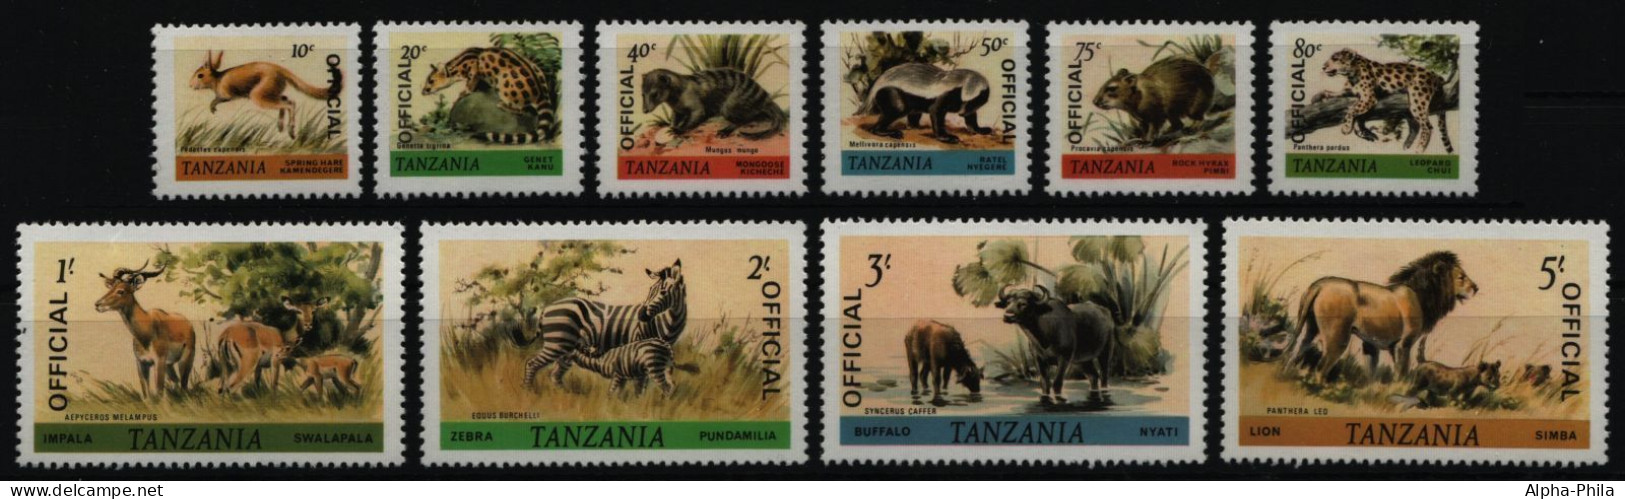 Tansania 1980 - Dienst - Mi-Nr. 28-37 ** - MNH - Wildtiere / Wild Animals - Tanzanie (1964-...)